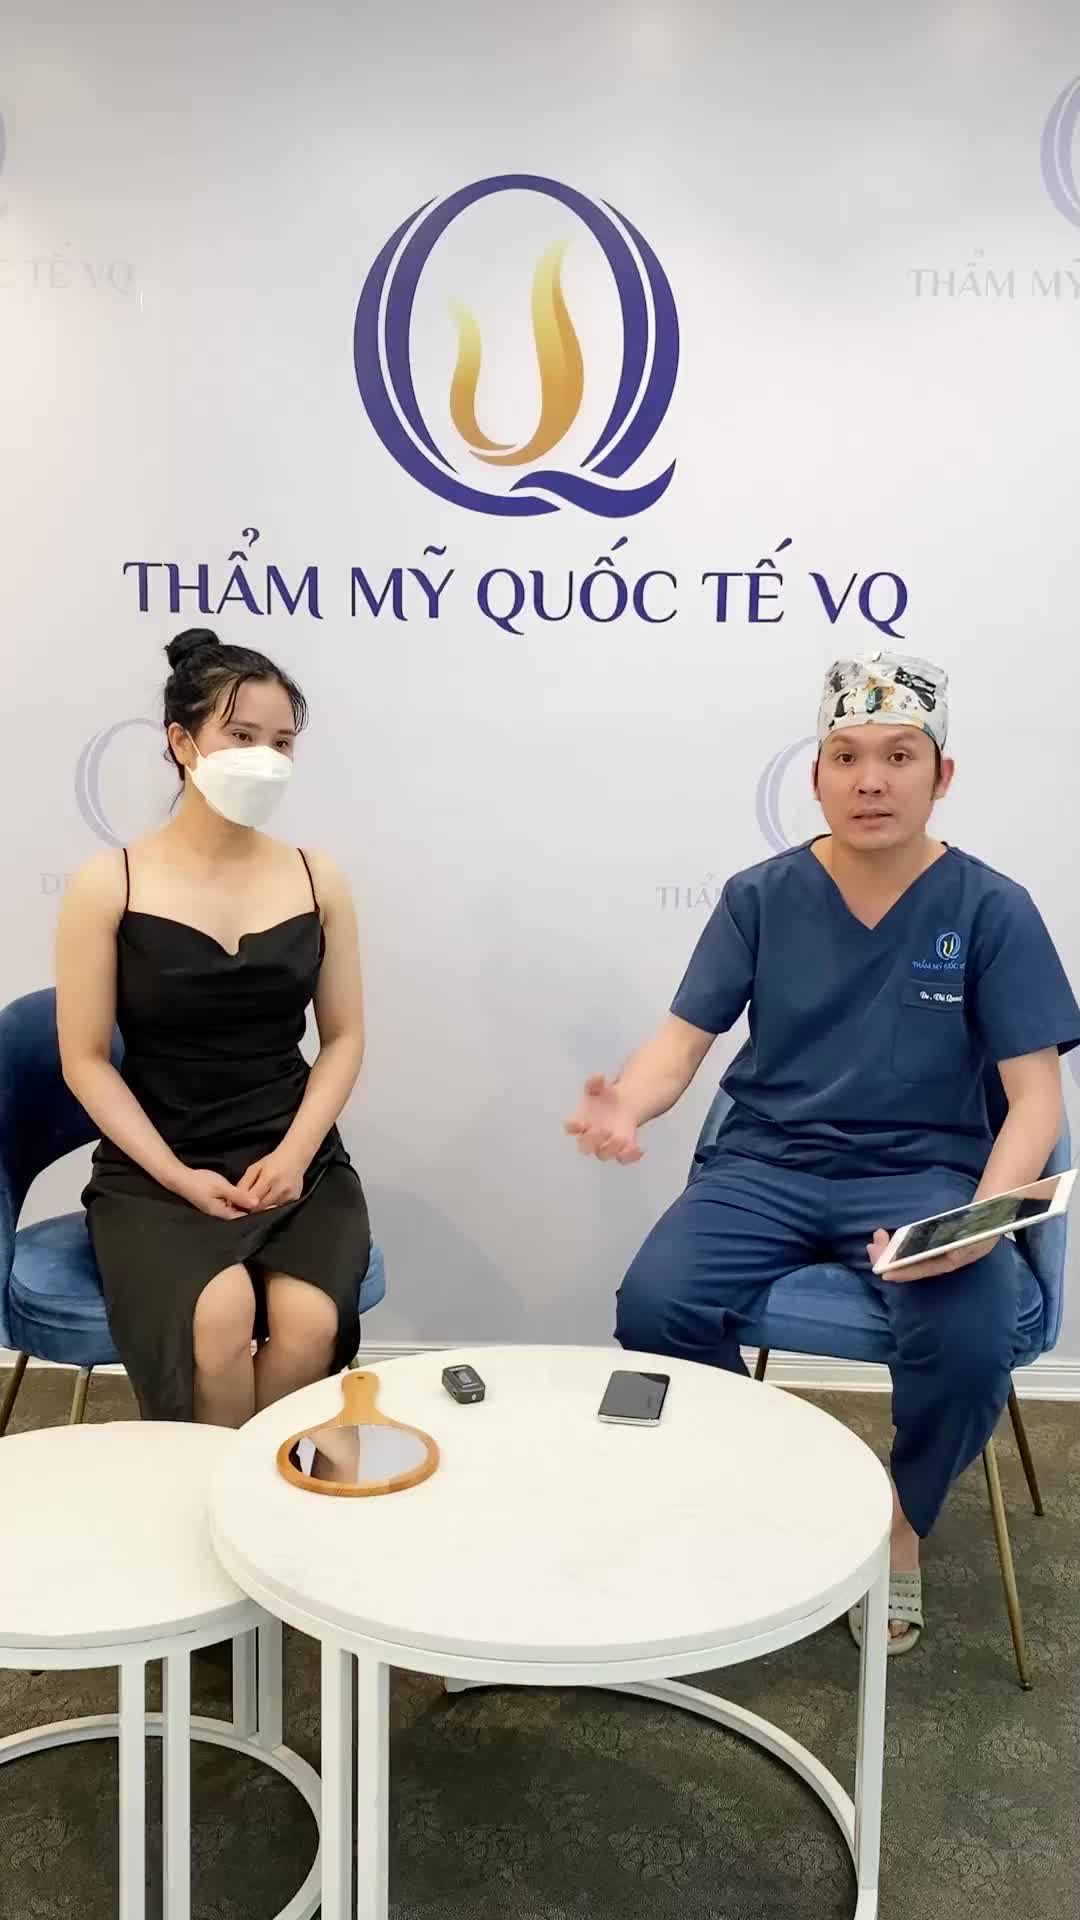 Dr Vũ Quang tái khám Combo hủy mỡ  bụng + Nâng vòng 1 Công nghệ cao sau 1 tháng thực hiện.